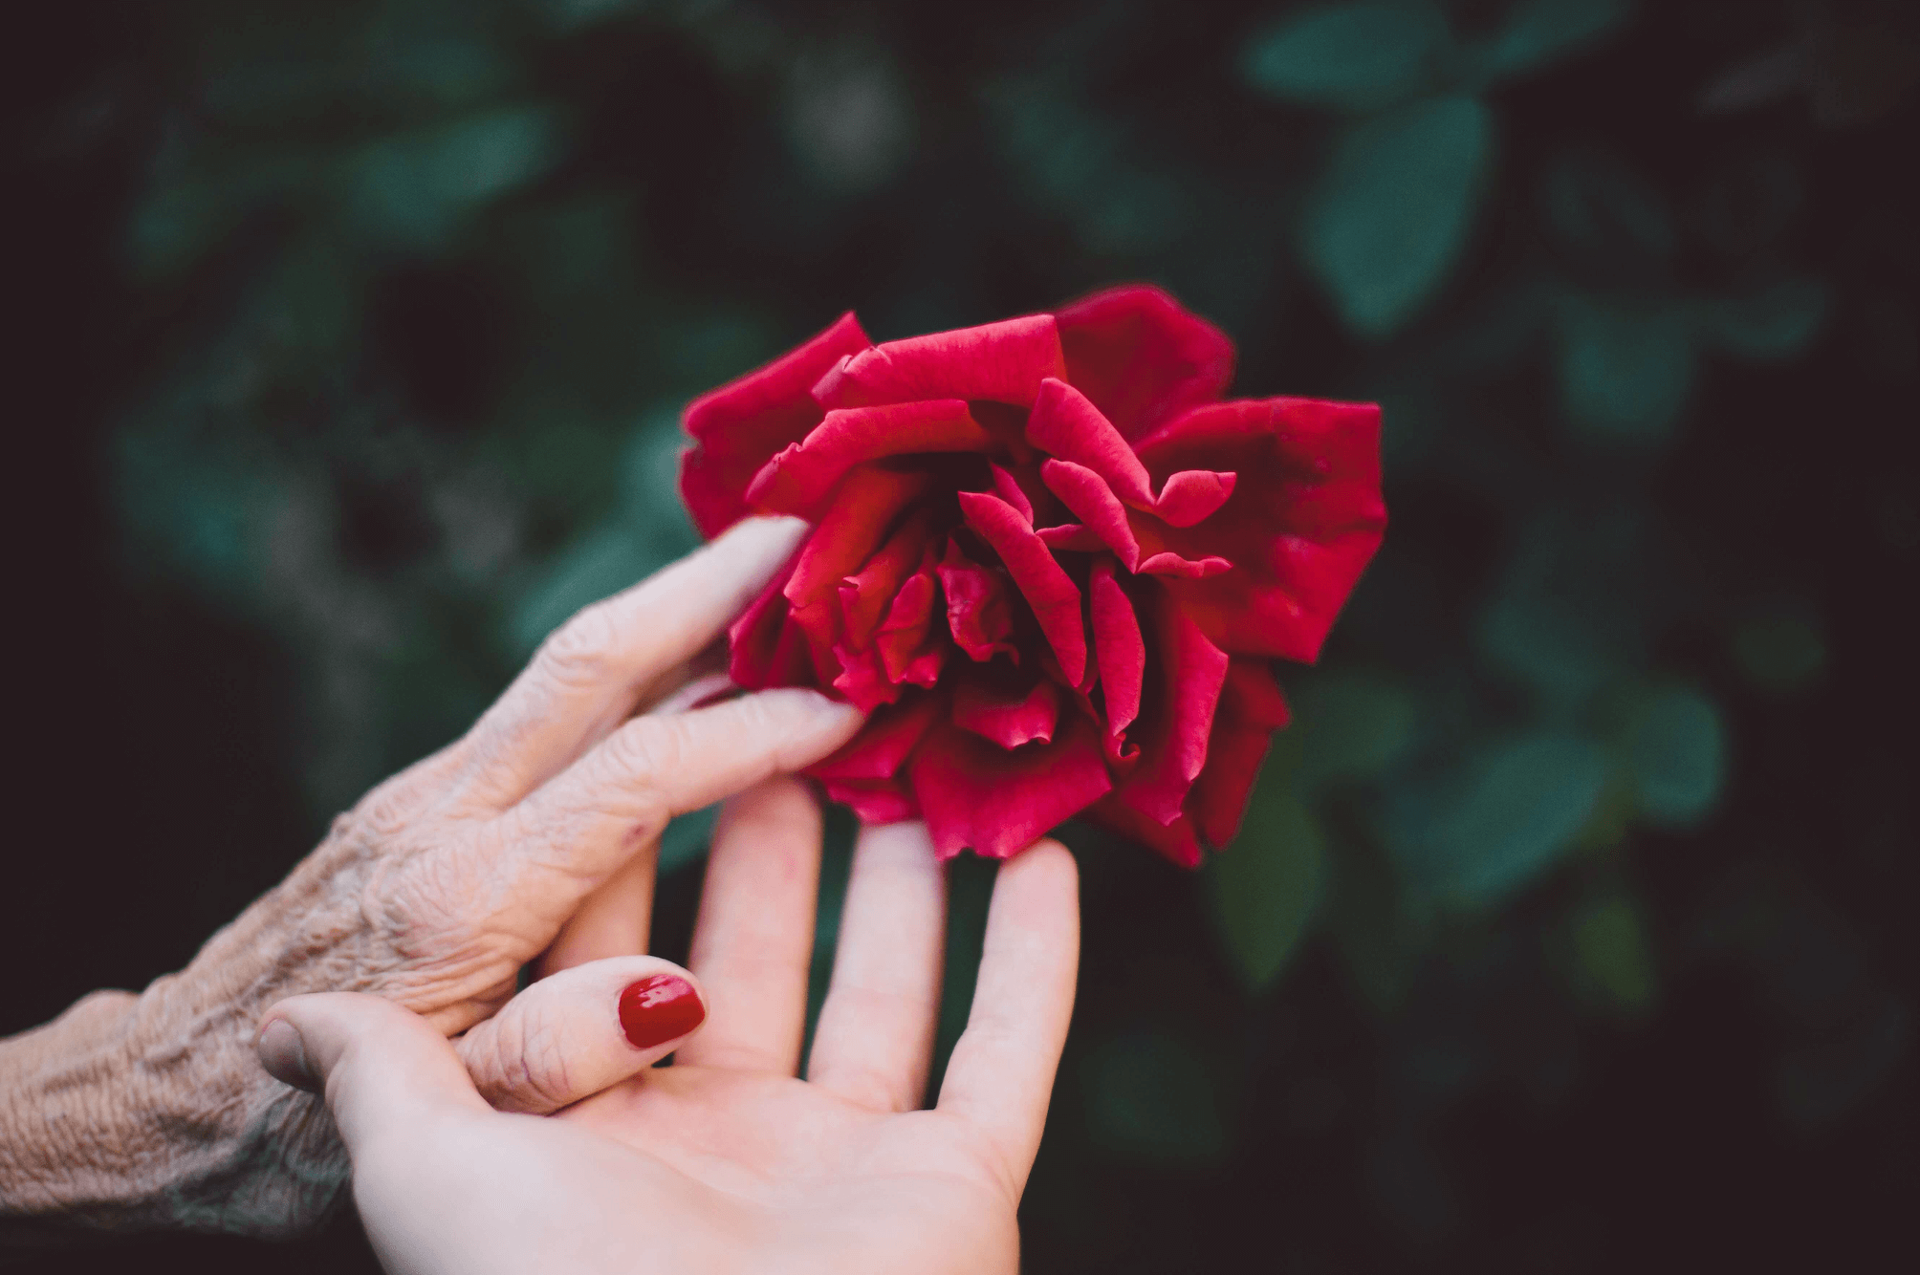 Hand einer jungen Person greift Hand einer alten Person. Beide greifen nach einer roten Rose.